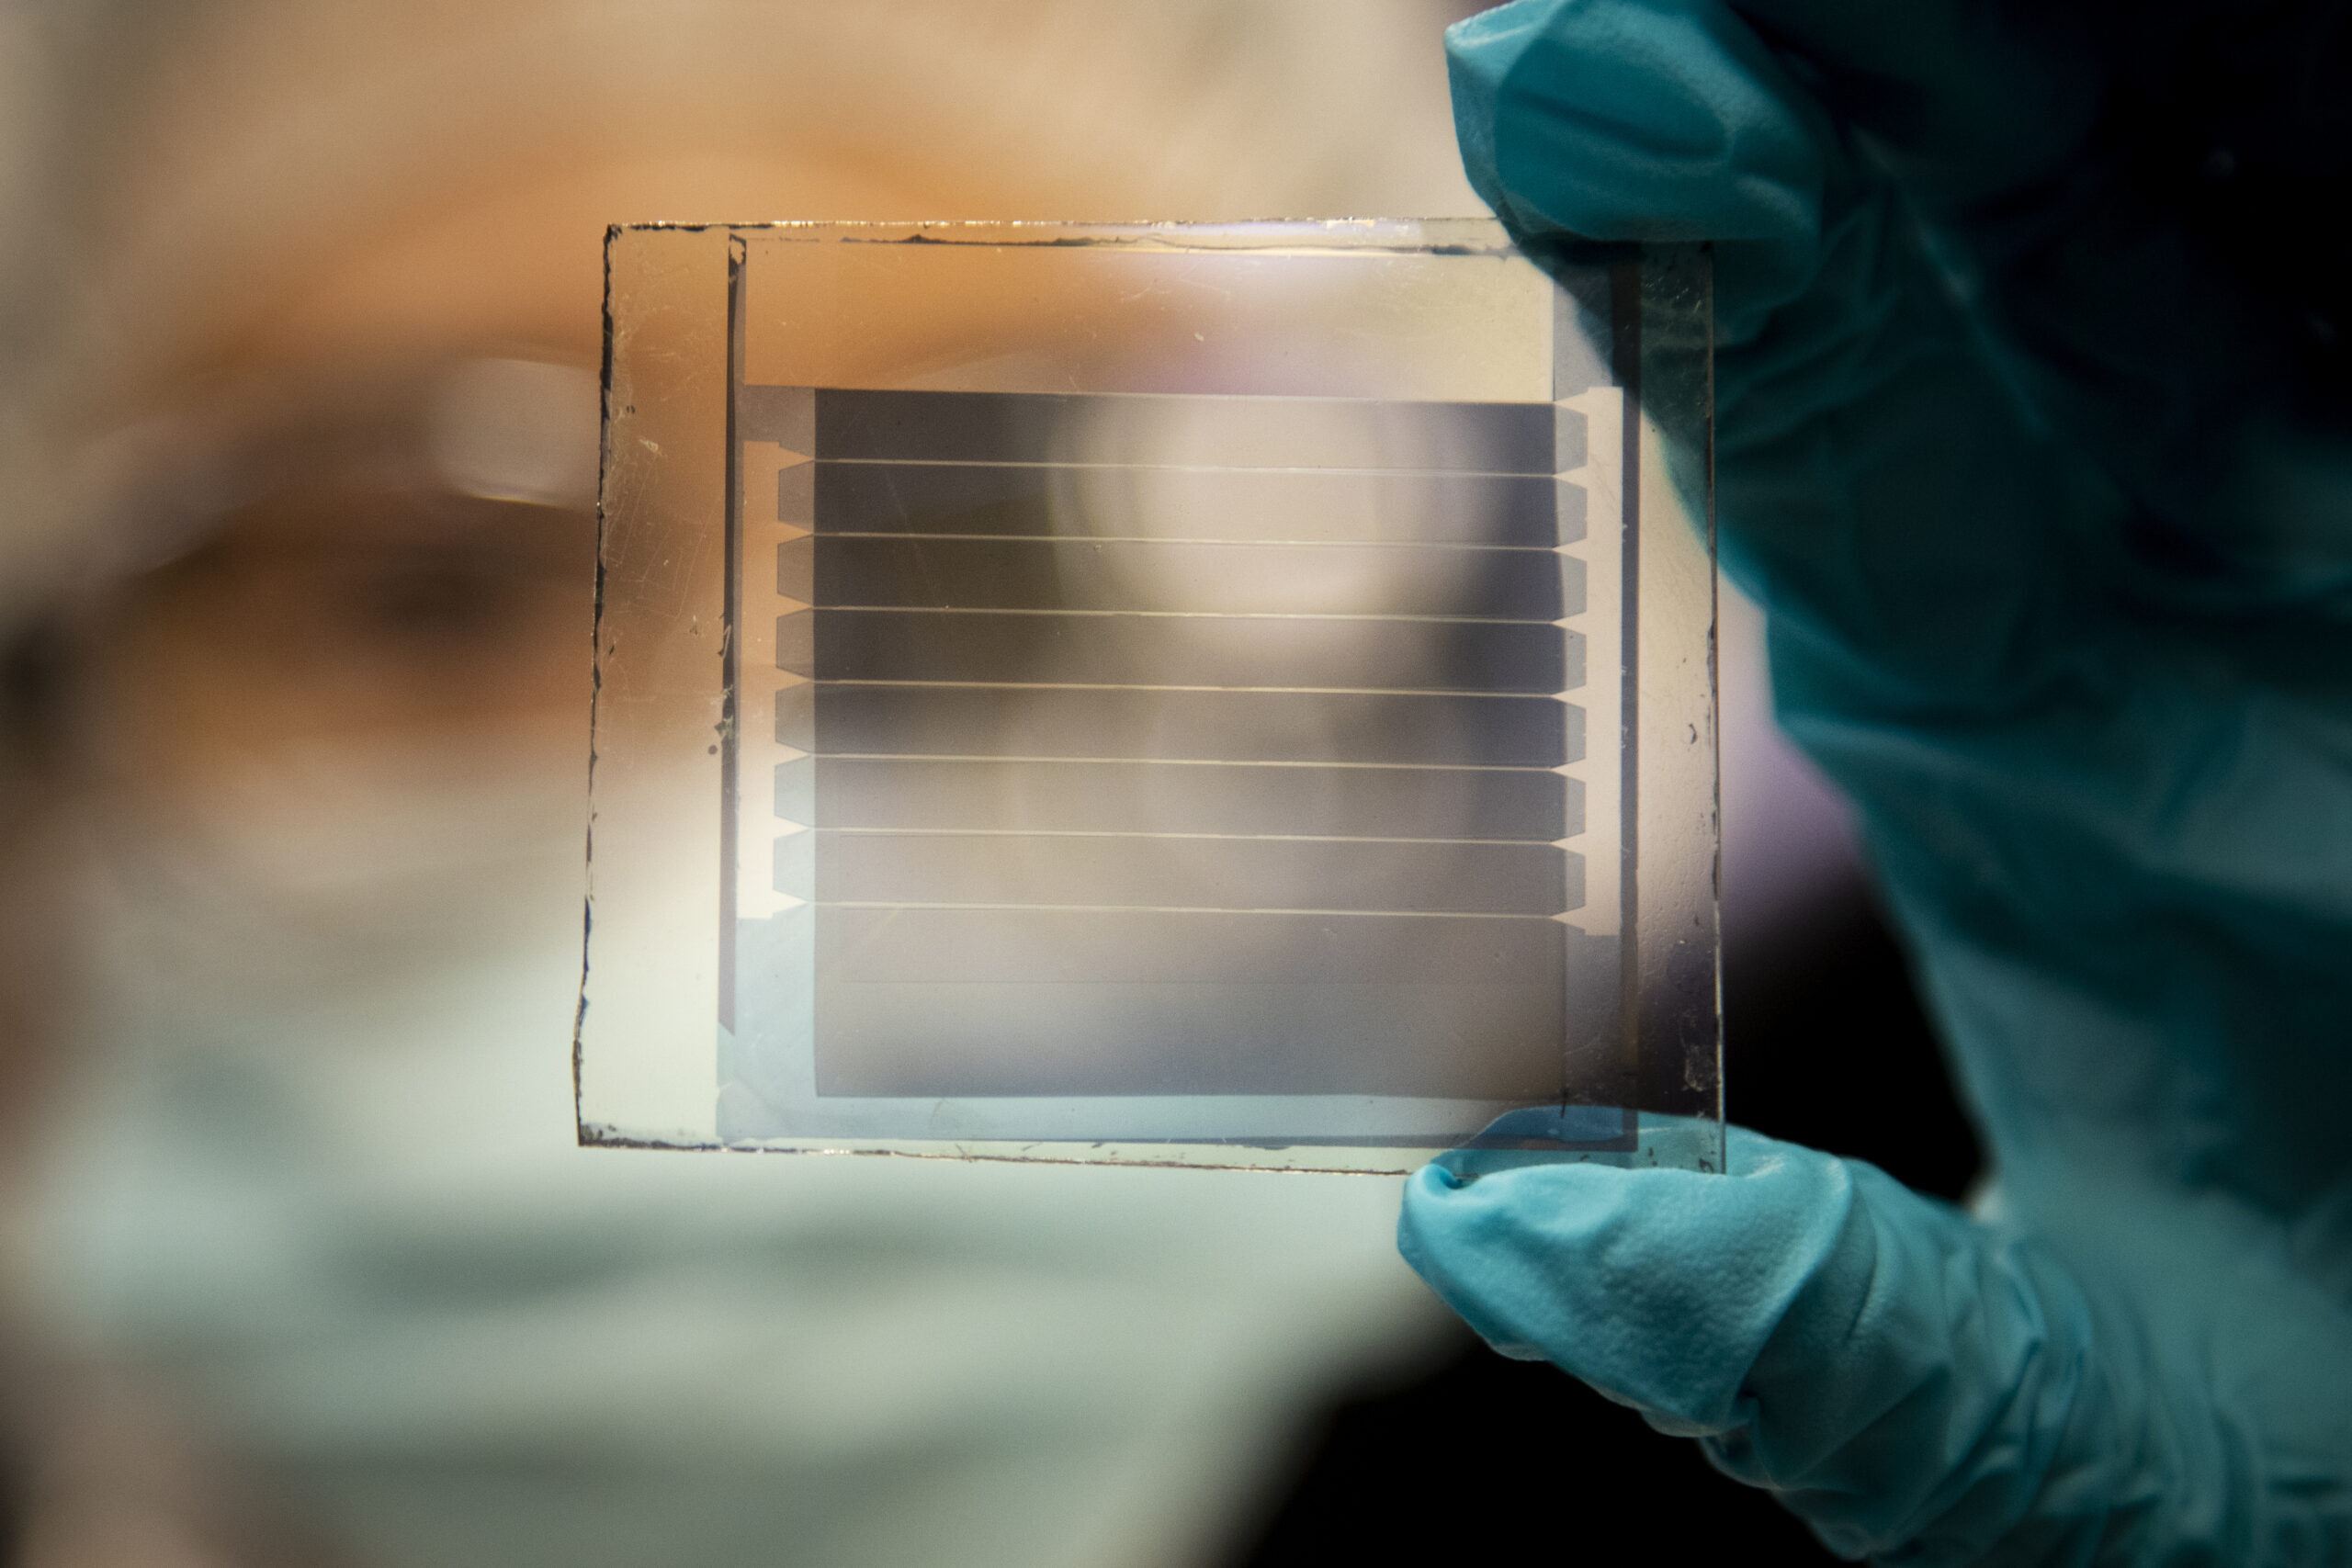 Pour fabriquer des fenêtres capables de produire de l’énergie, il faut concevoir des cellules photovoltaïques transparentes et qui durent dans le temps. Des chercheurs semblent être sur une piste intéressante. © Robert Coelius, Michigan Engineering